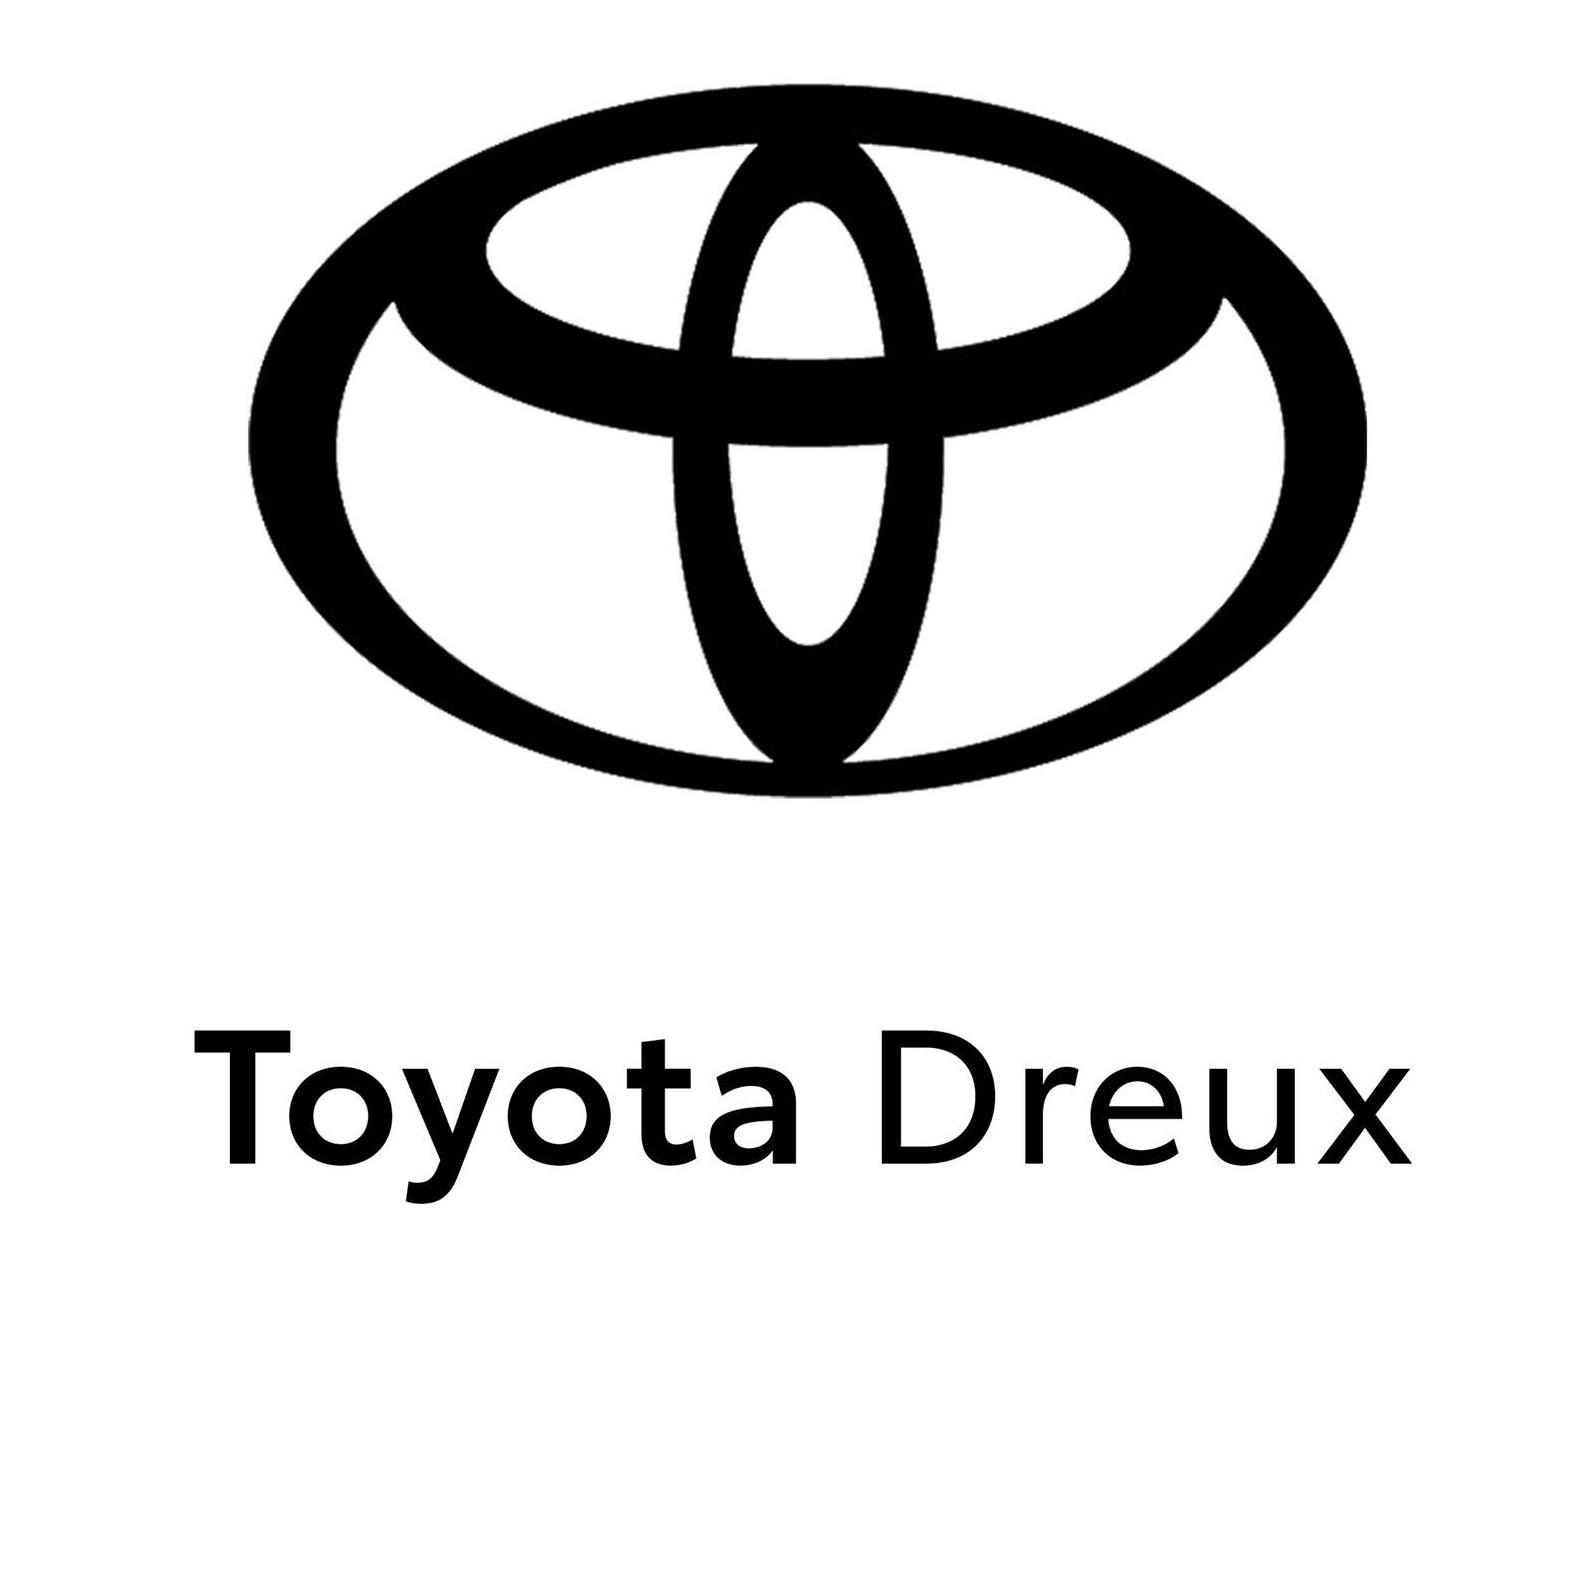 Toyota - Dreux - Car Lovers Vernouillet